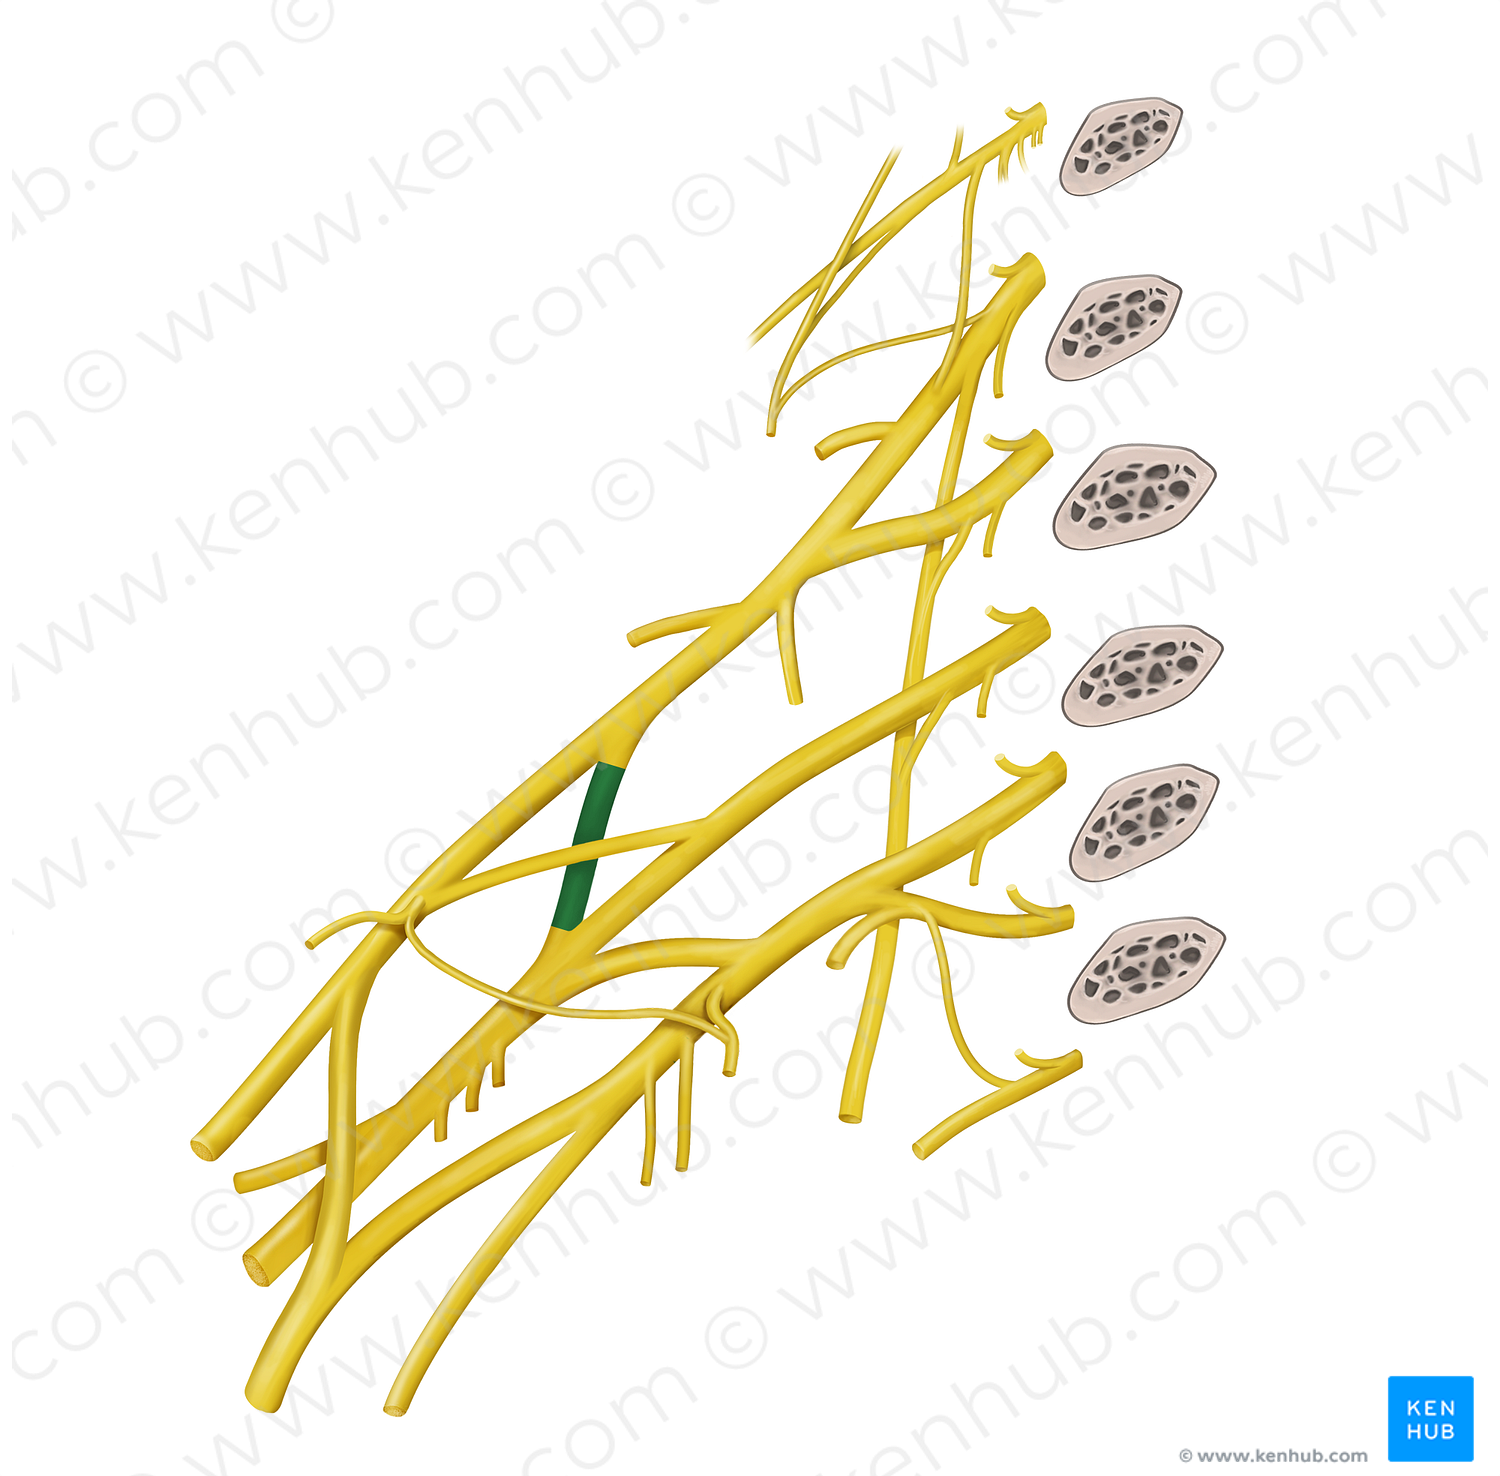 Posterior division of superior trunk of brachial plexus (#20602)